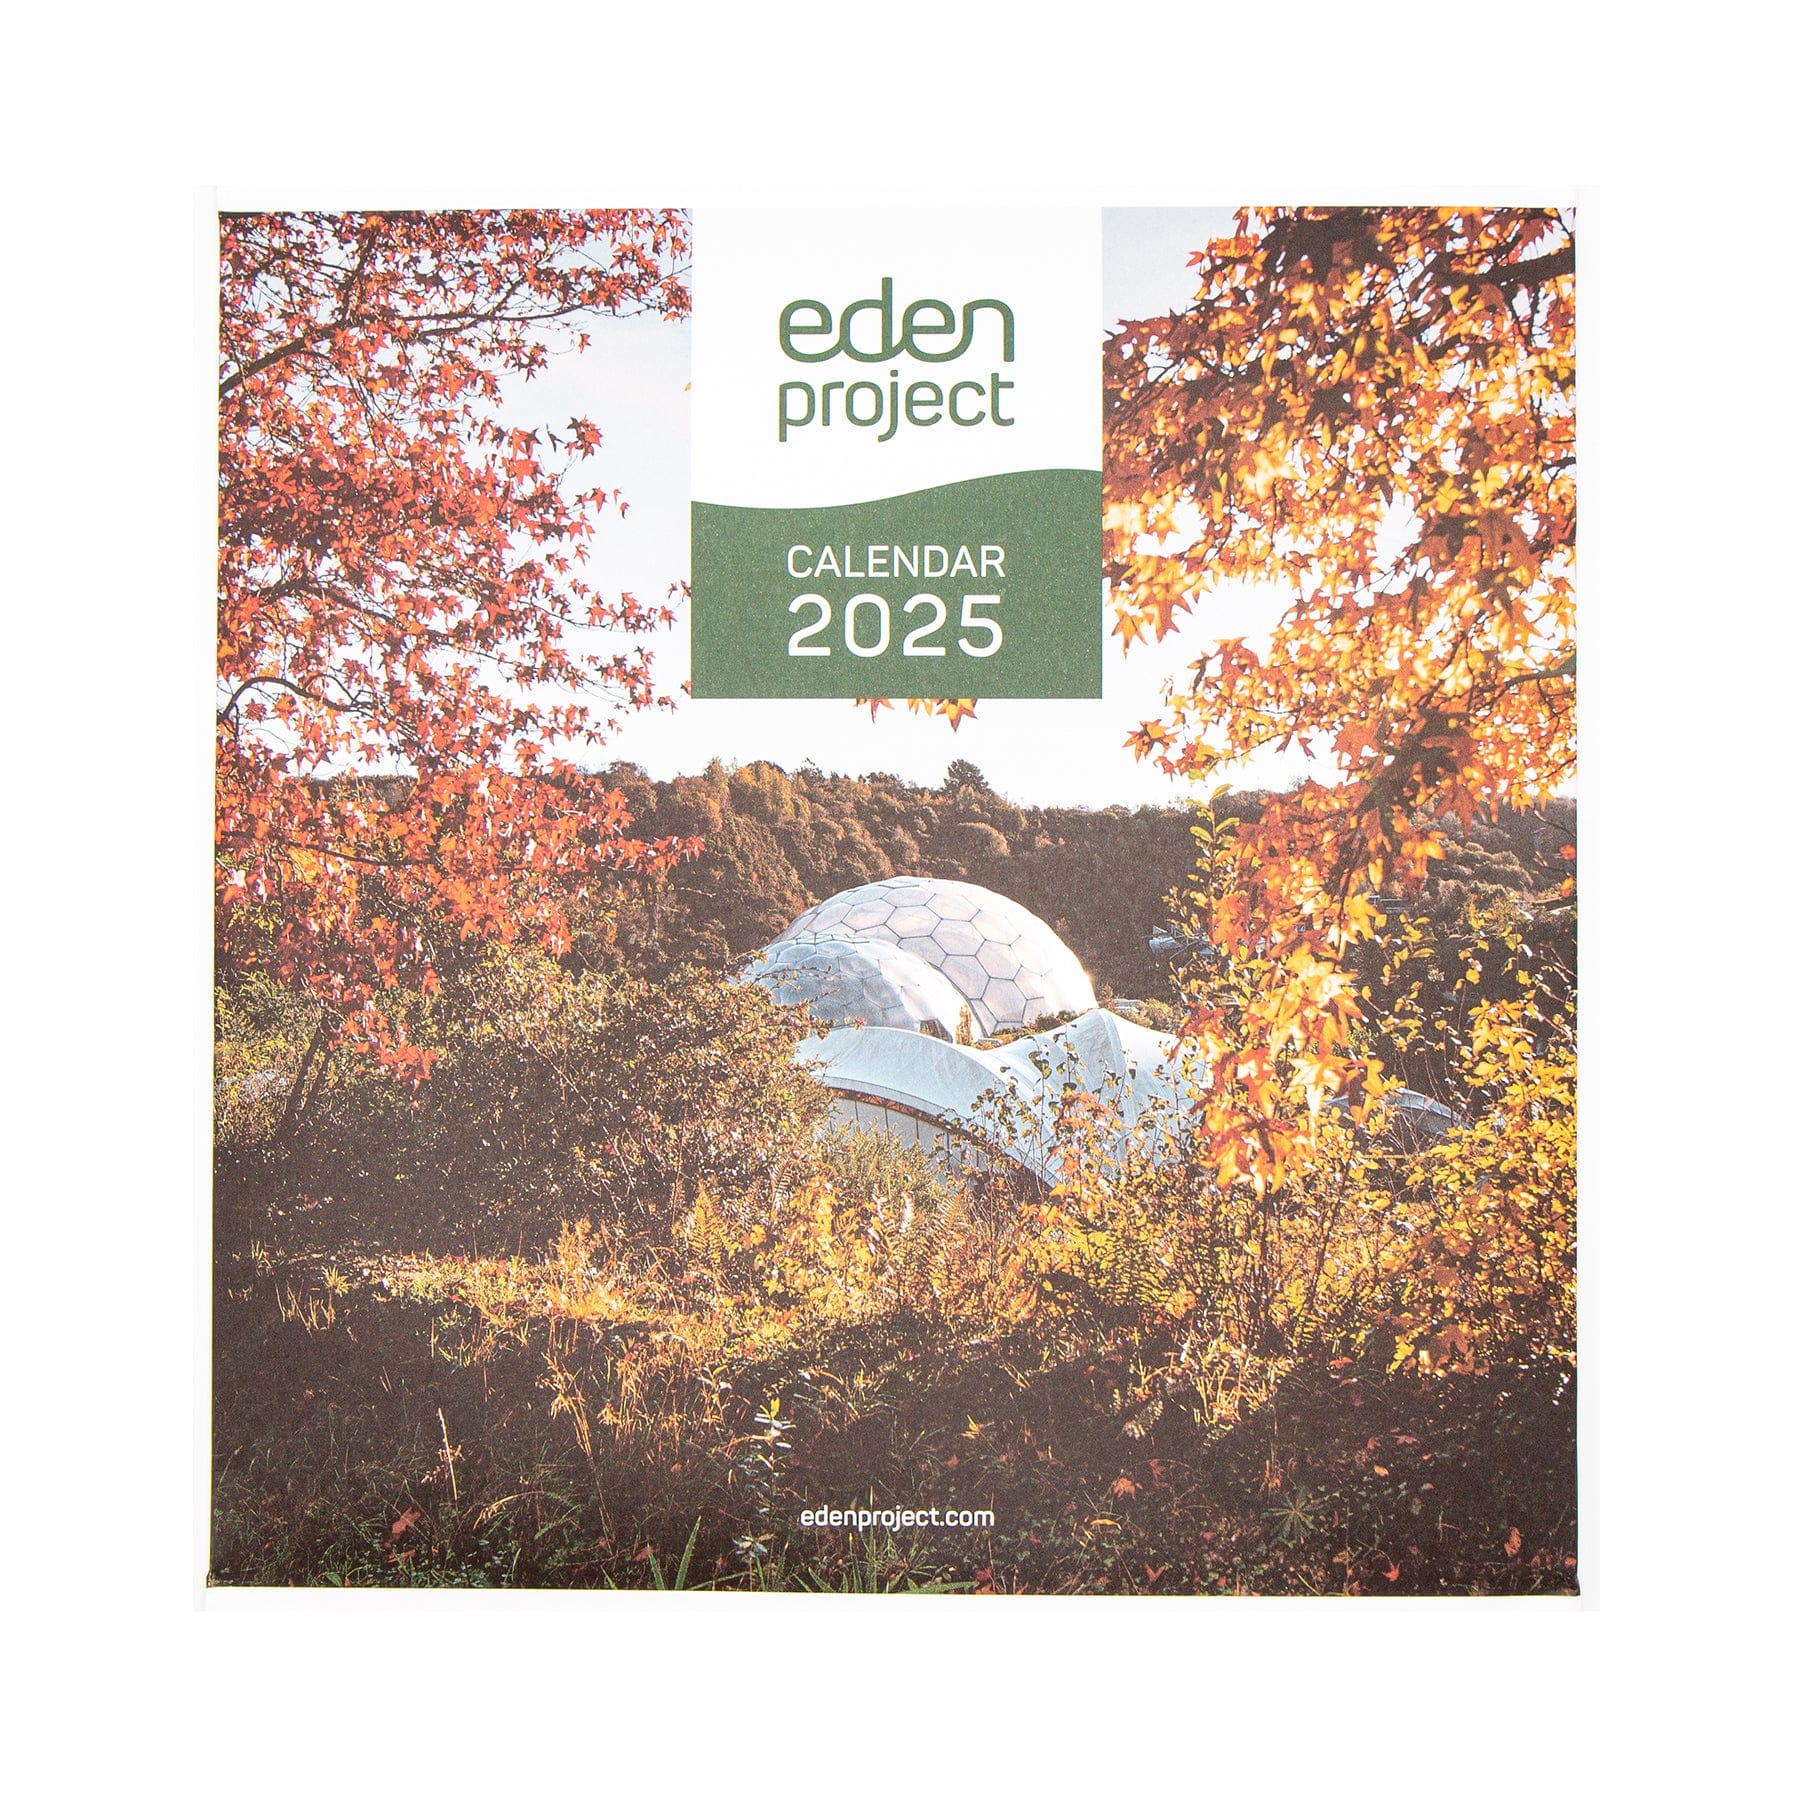 Eden Project calendar 2025